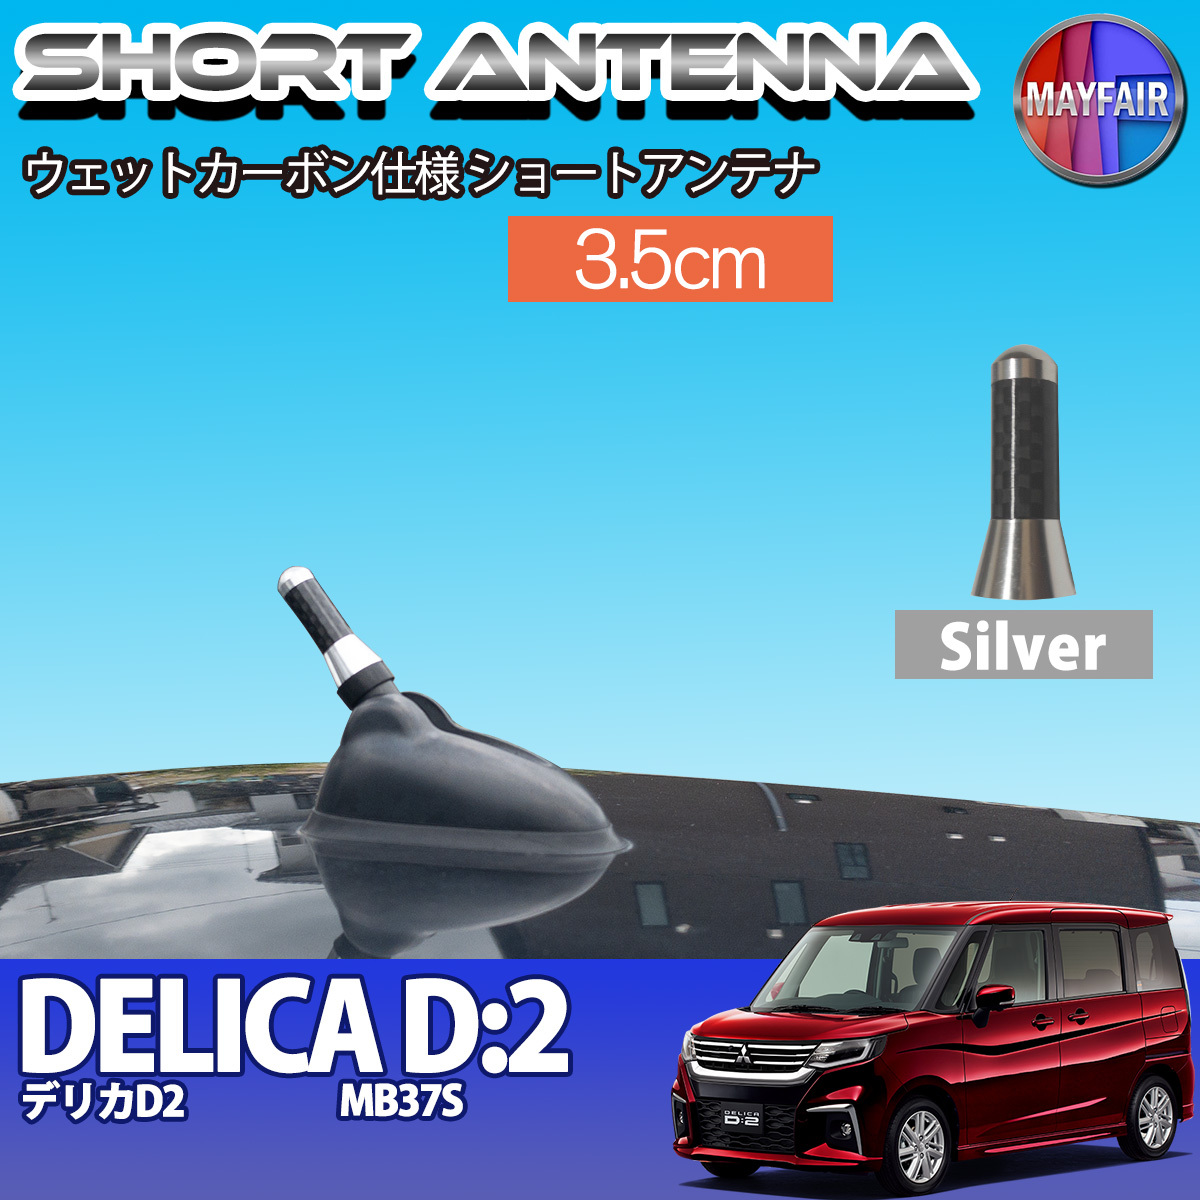 1】 デリカ D2 MB37S ショートアンテナ 純正交換 ラジオ アンテナ 車用 カーボン 3.5cm シルバー